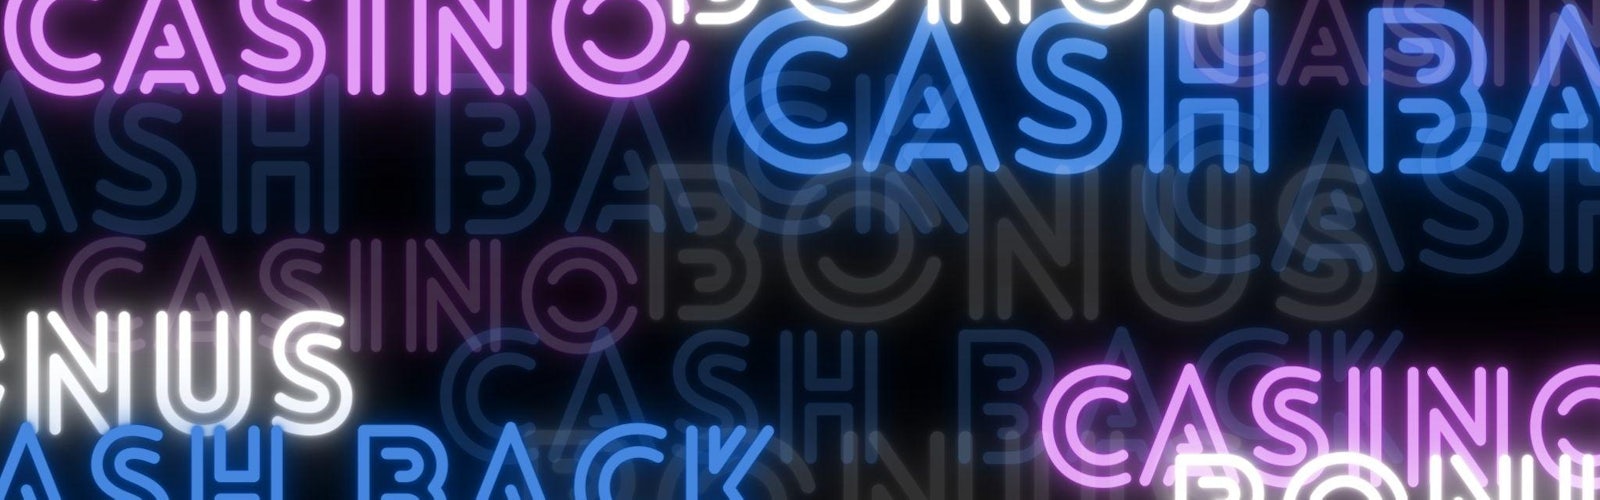 黒い背景に青と紫のネオン風のアルファベットでCASH BACkと書かれたテキストが散りばめられている様子